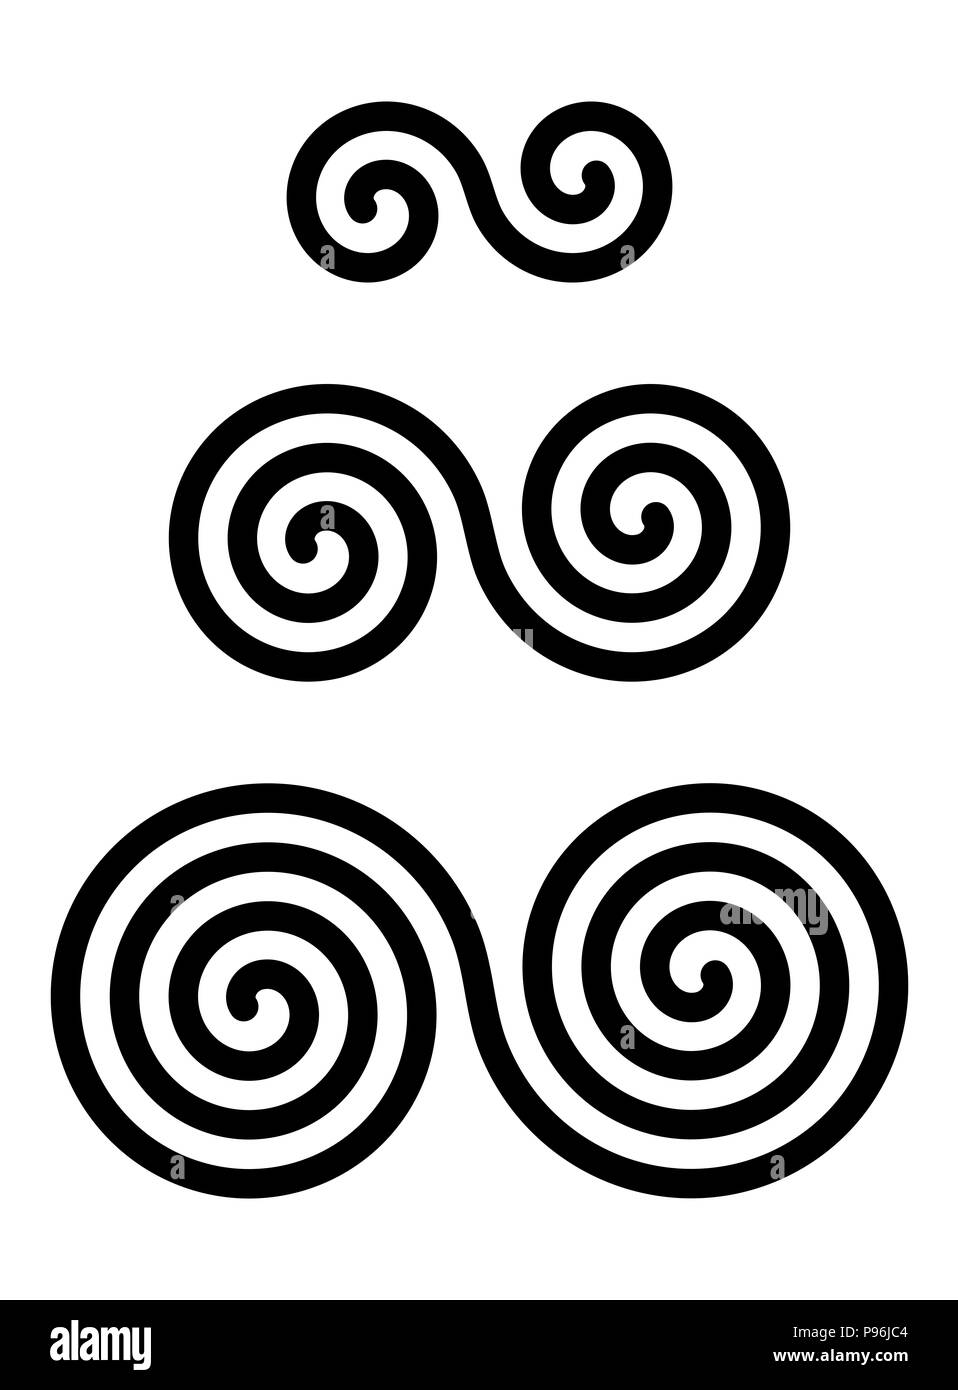 Drei verriegelt doppelte Spiralen über Weiß. Kombinierte Spiralen mit zwei, drei und vier Umdrehungen. Motive der Twisted und angeschlossenen Spiralen. Stockfoto